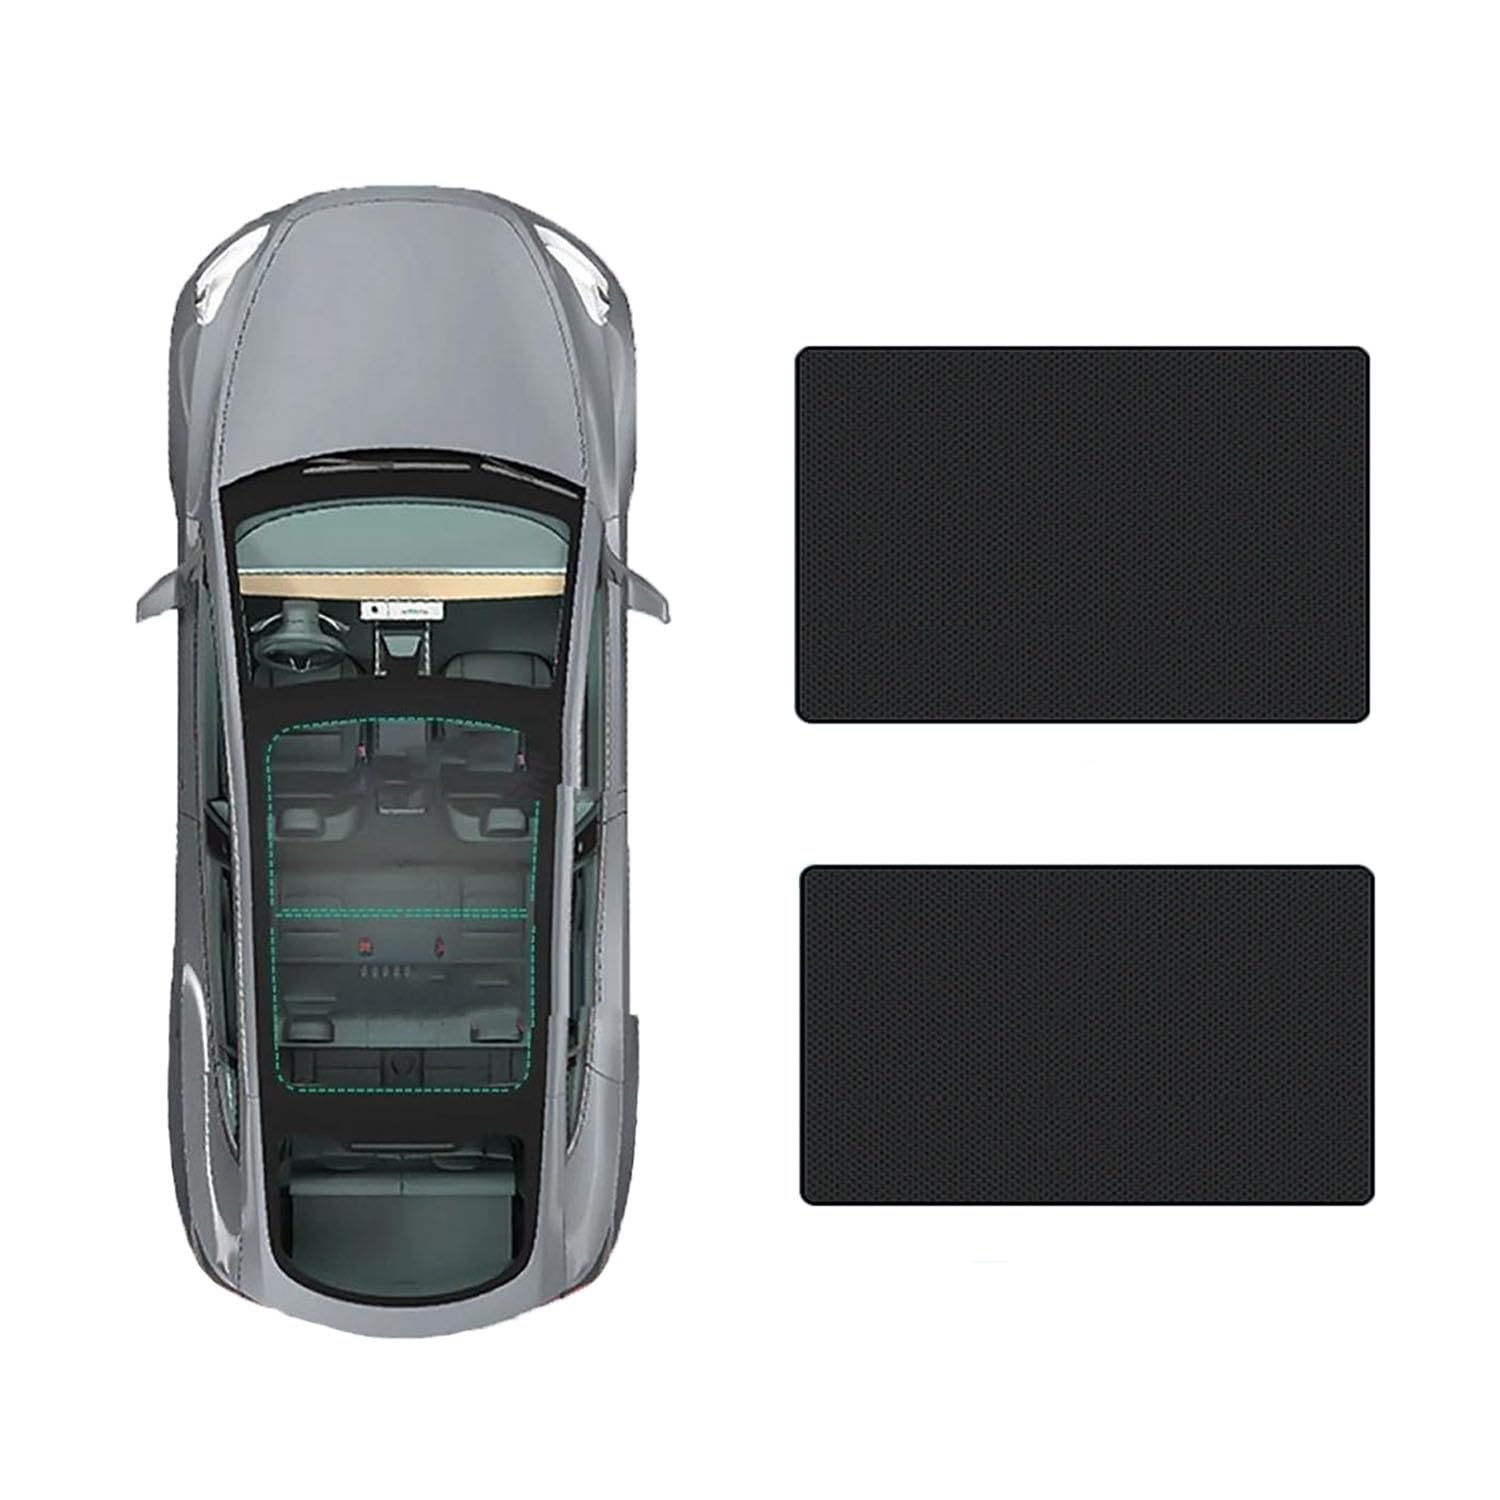 Auto Schiebedach Sonnenschirm Vorhang Für Toyota Highlander 2015-,UV-Schutz Schattierung vorne Heckscheibe Sonnenschutz,C-Black regular Style von JiAQen